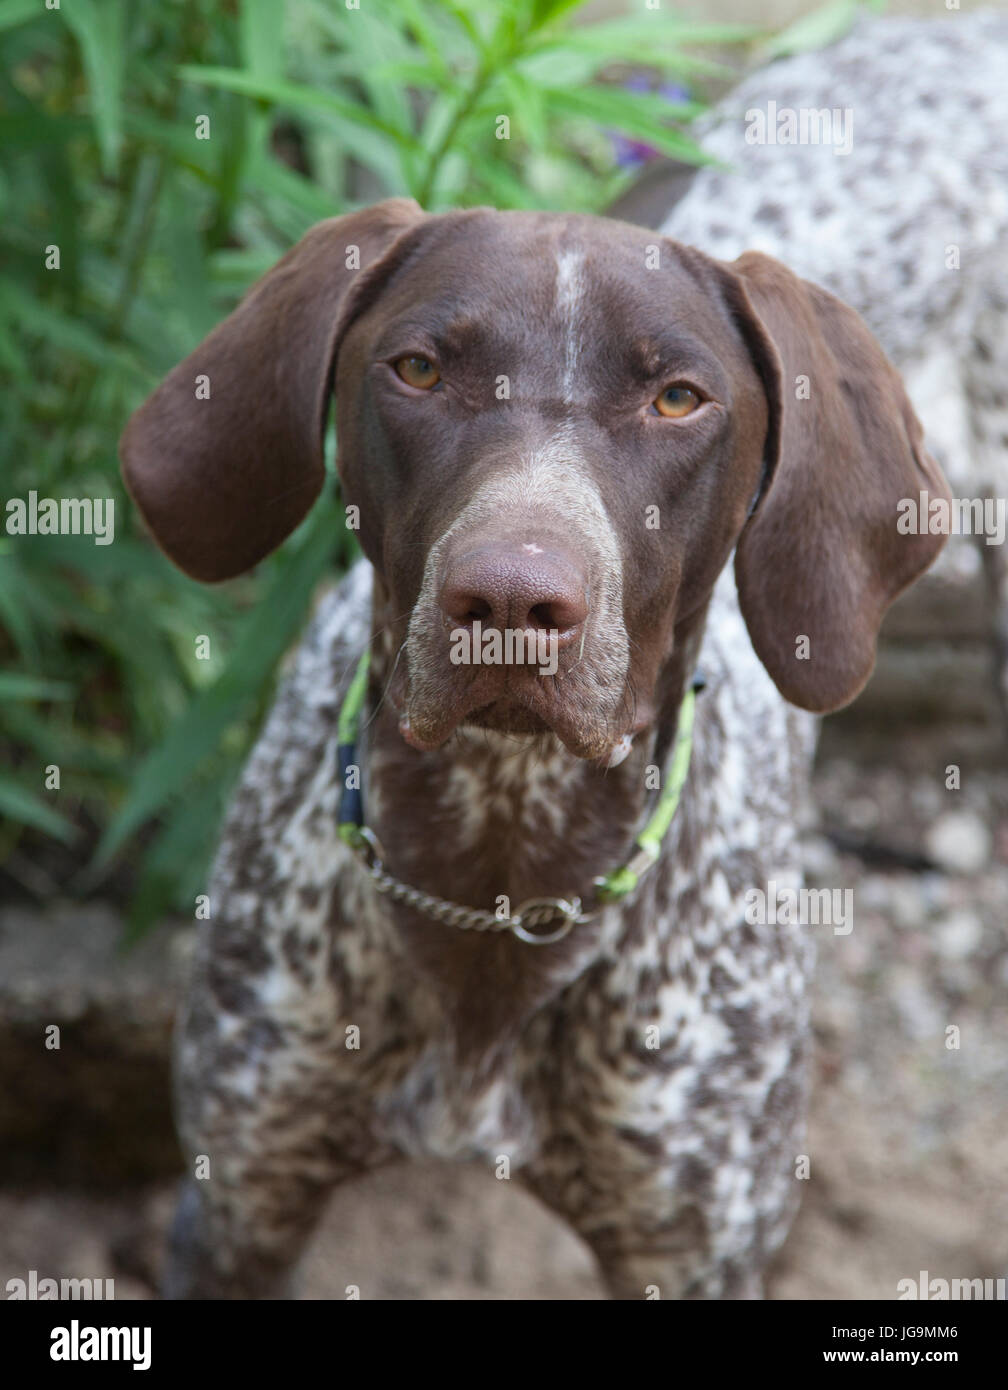 Puntatore offen chiamato il puntatore in inglese è un supporto di grandi dimensioni la razza del cane per la caccia degli uccelli. Foto Stock